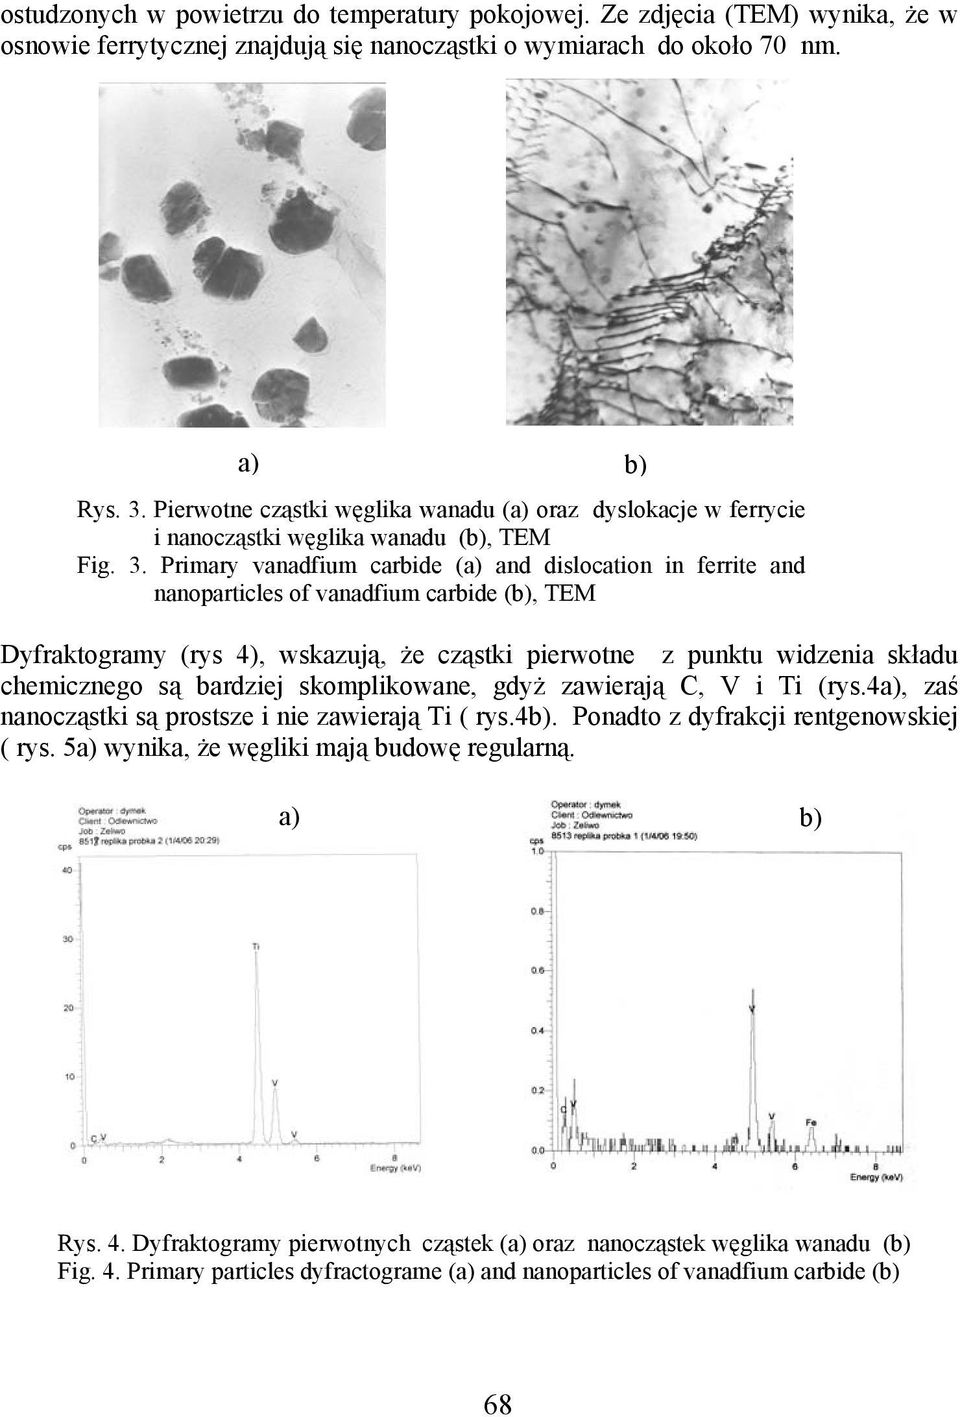 Primary vanadfium carbide (a) and dislocation in ferrite and nanoparticles of vanadfium carbide (b), TEM Dyfraktogramy (rys 4), wskazują, że cząstki pierwotne z punktu widzenia składu chemicznego są